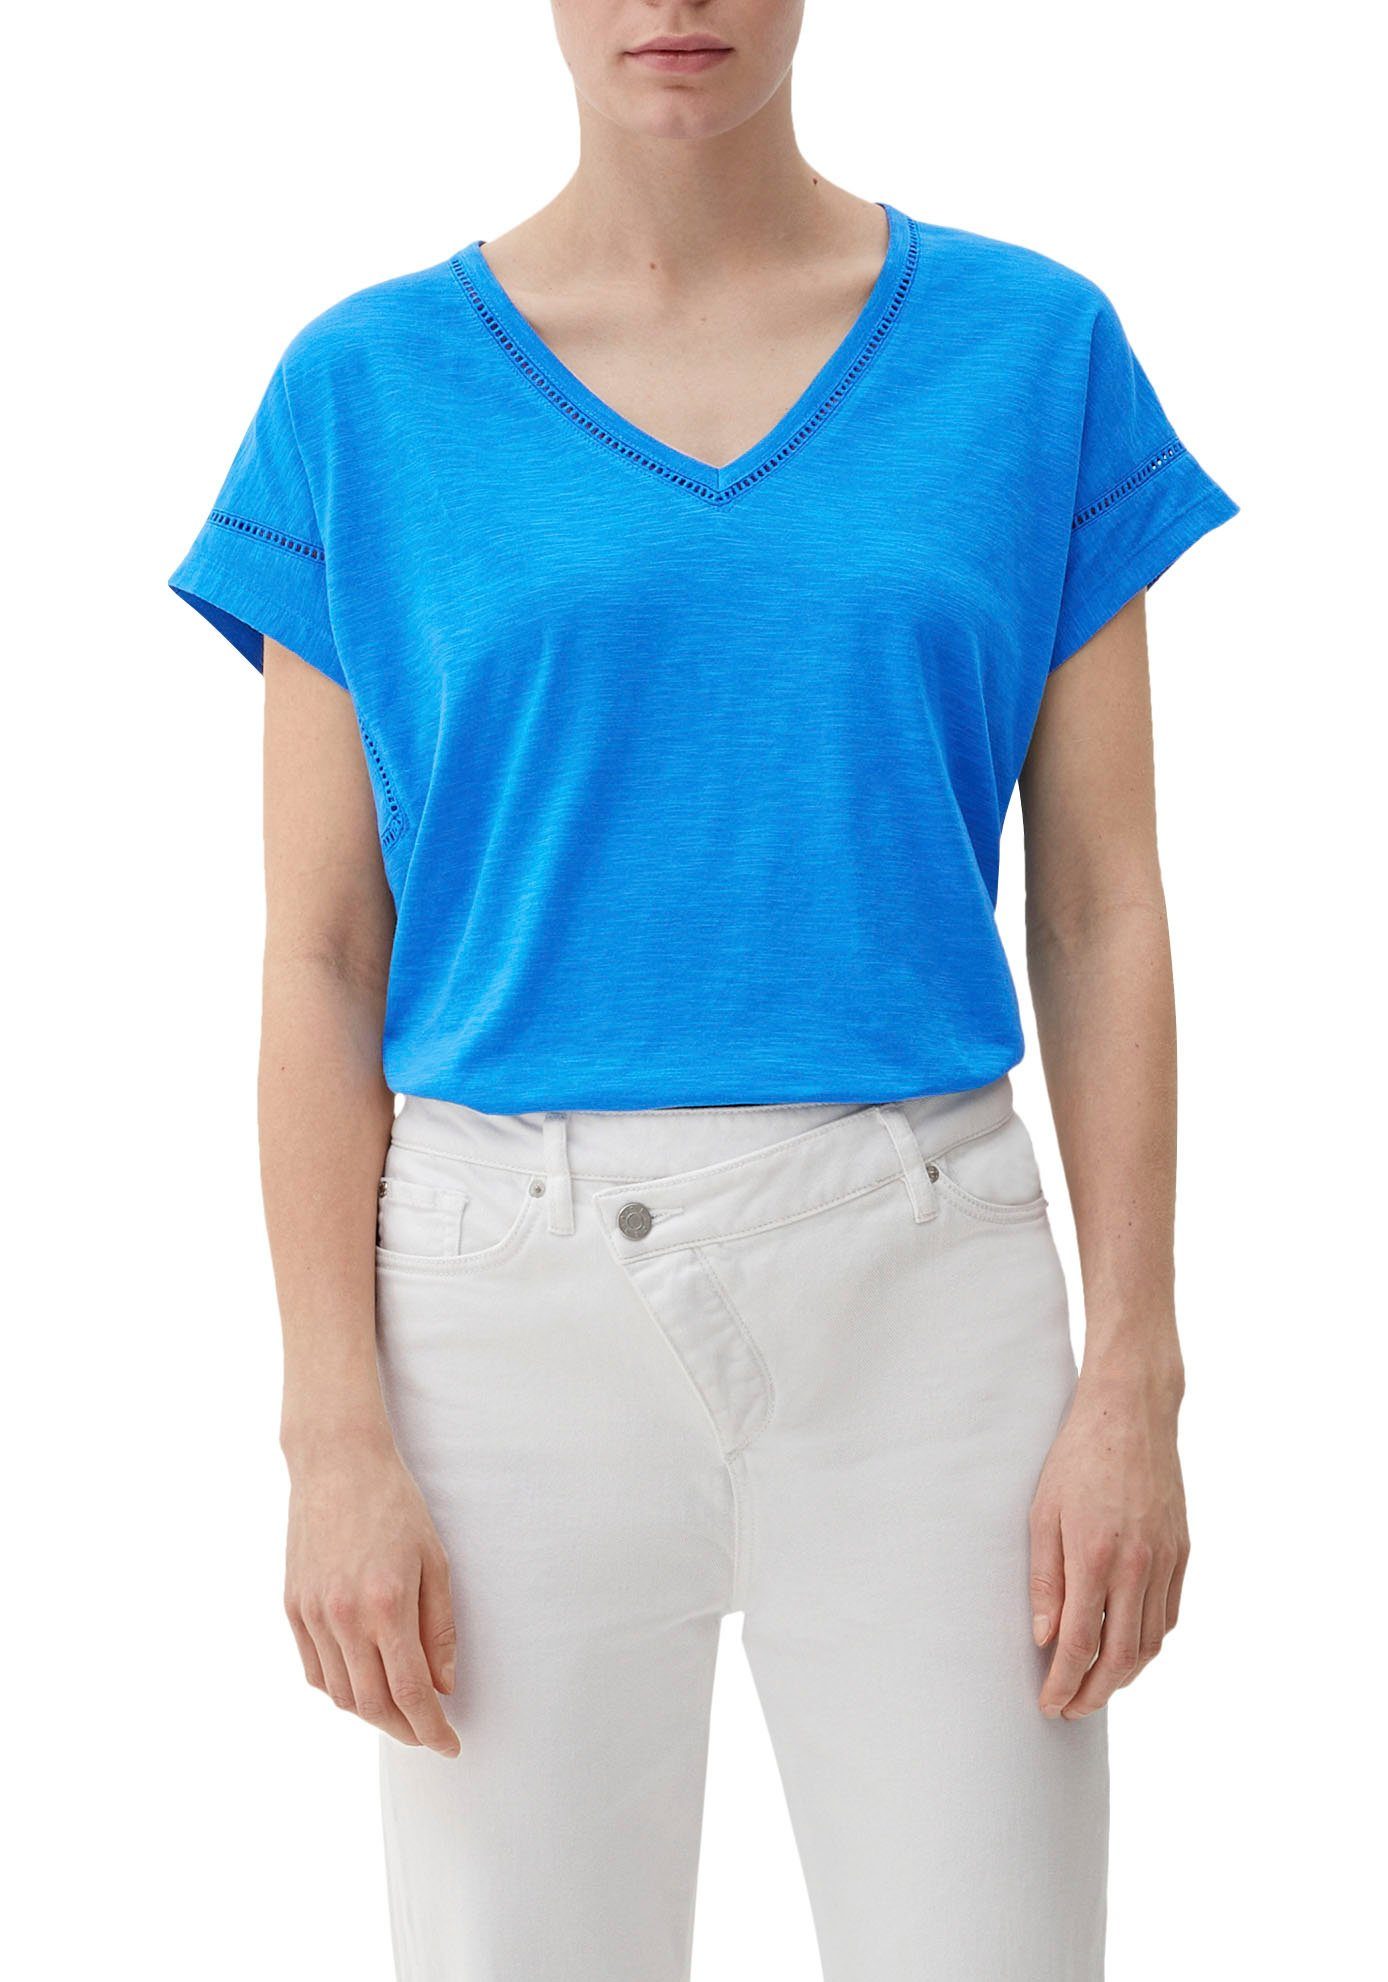 Zu günstigen Preisen s.Oliver T-Shirt mit Zierborte blue